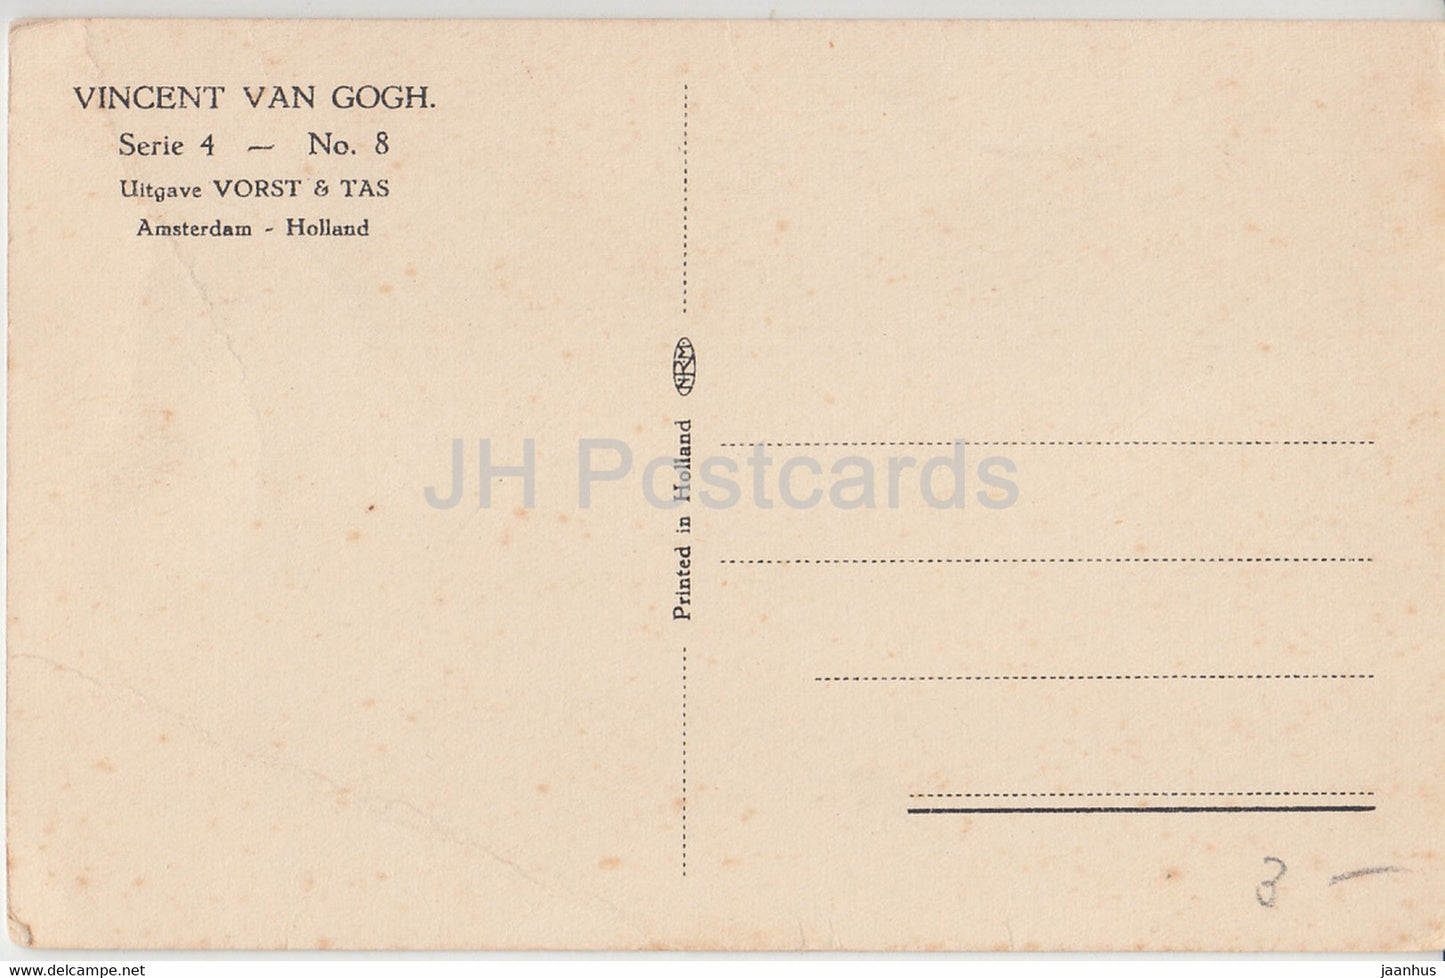 Gemälde von Vincent van Gogh – Stuhl – Serie 4 Nr. 8 – Uitgave Vorst &amp; Tas – Niederländische Kunst – alte Postkarte Niederlande unbenutzt